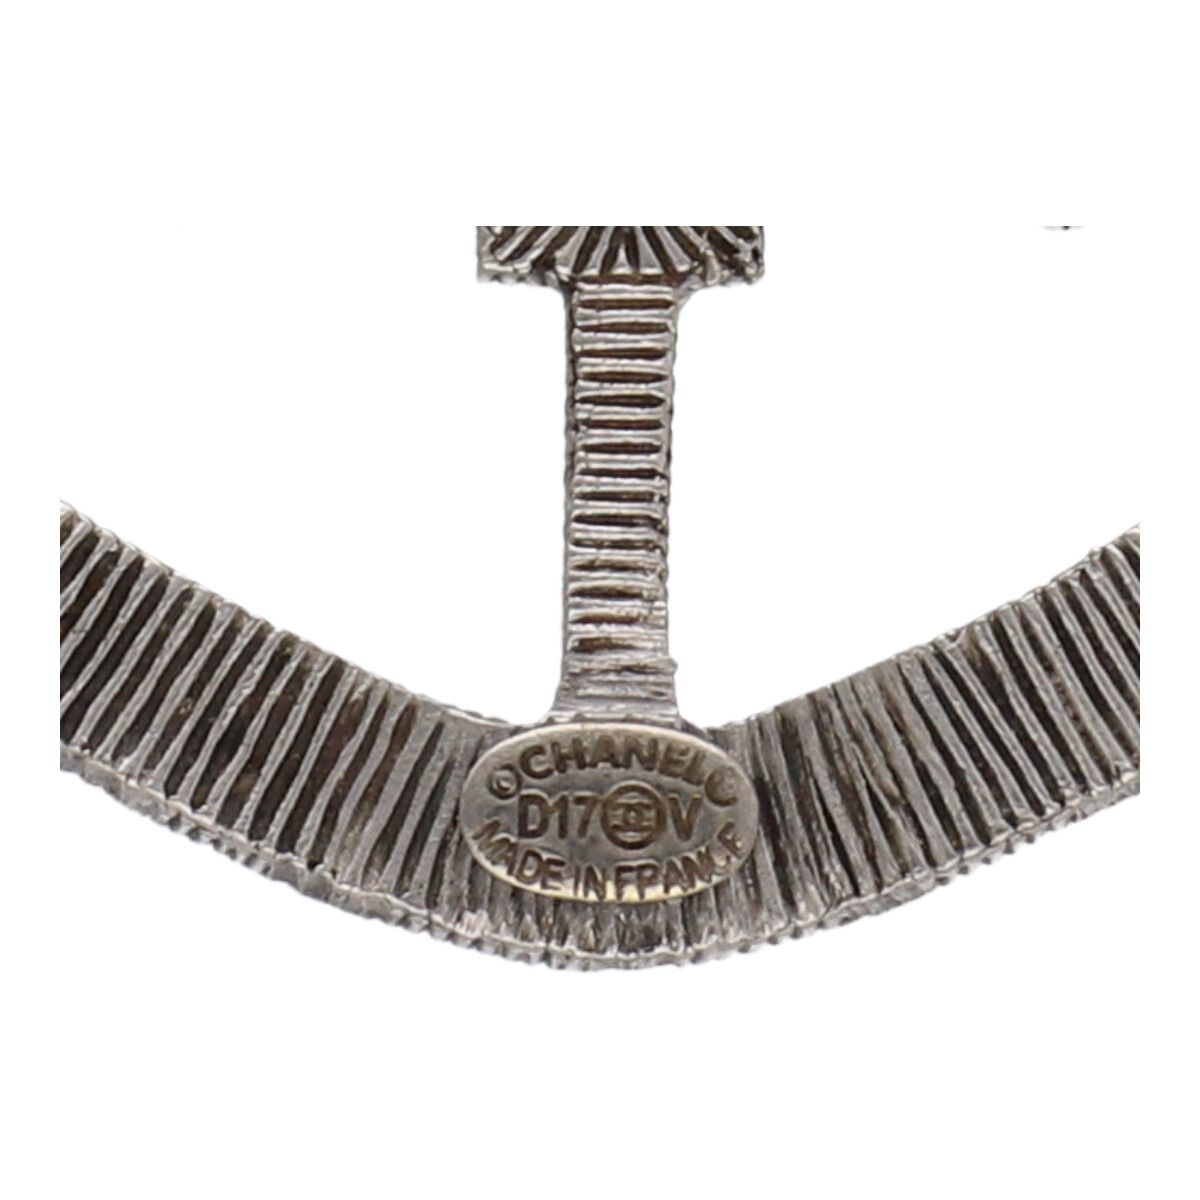 [ б/у ] CHANEL Chanel эмблема стразы брошь D17V серебряный Logo здесь Mark защита 23043601 RS